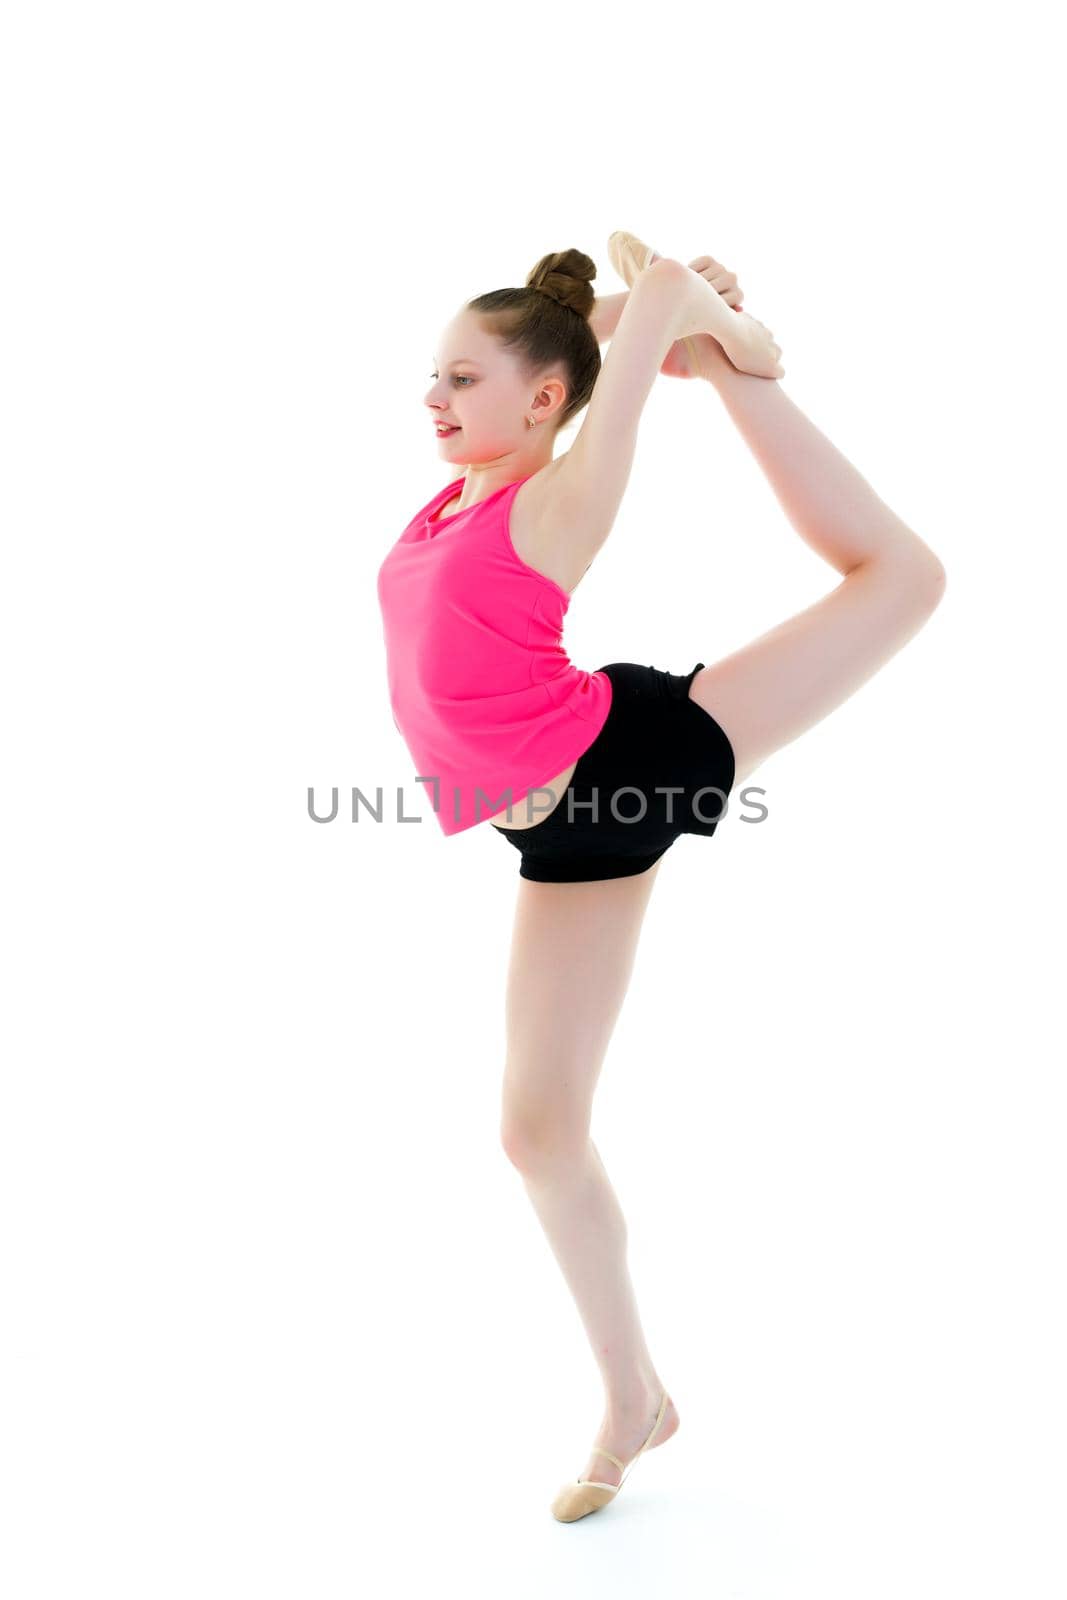 The gymnast balances on one leg. by kolesnikov_studio